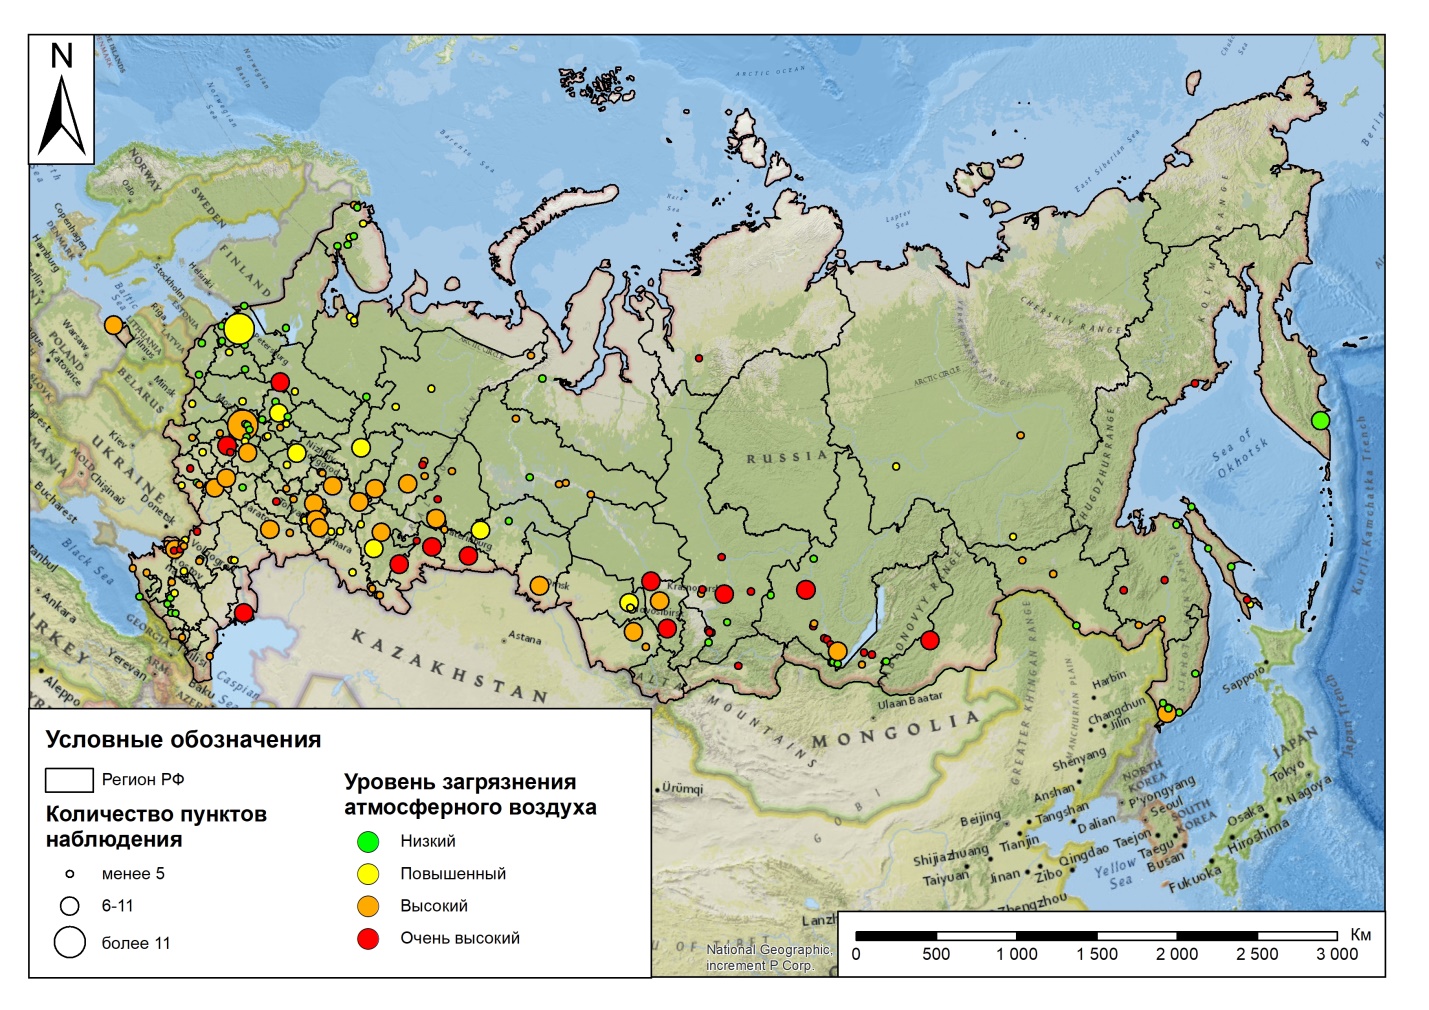 Мониторинг атмосферного воздуха в городах Российской Федерации